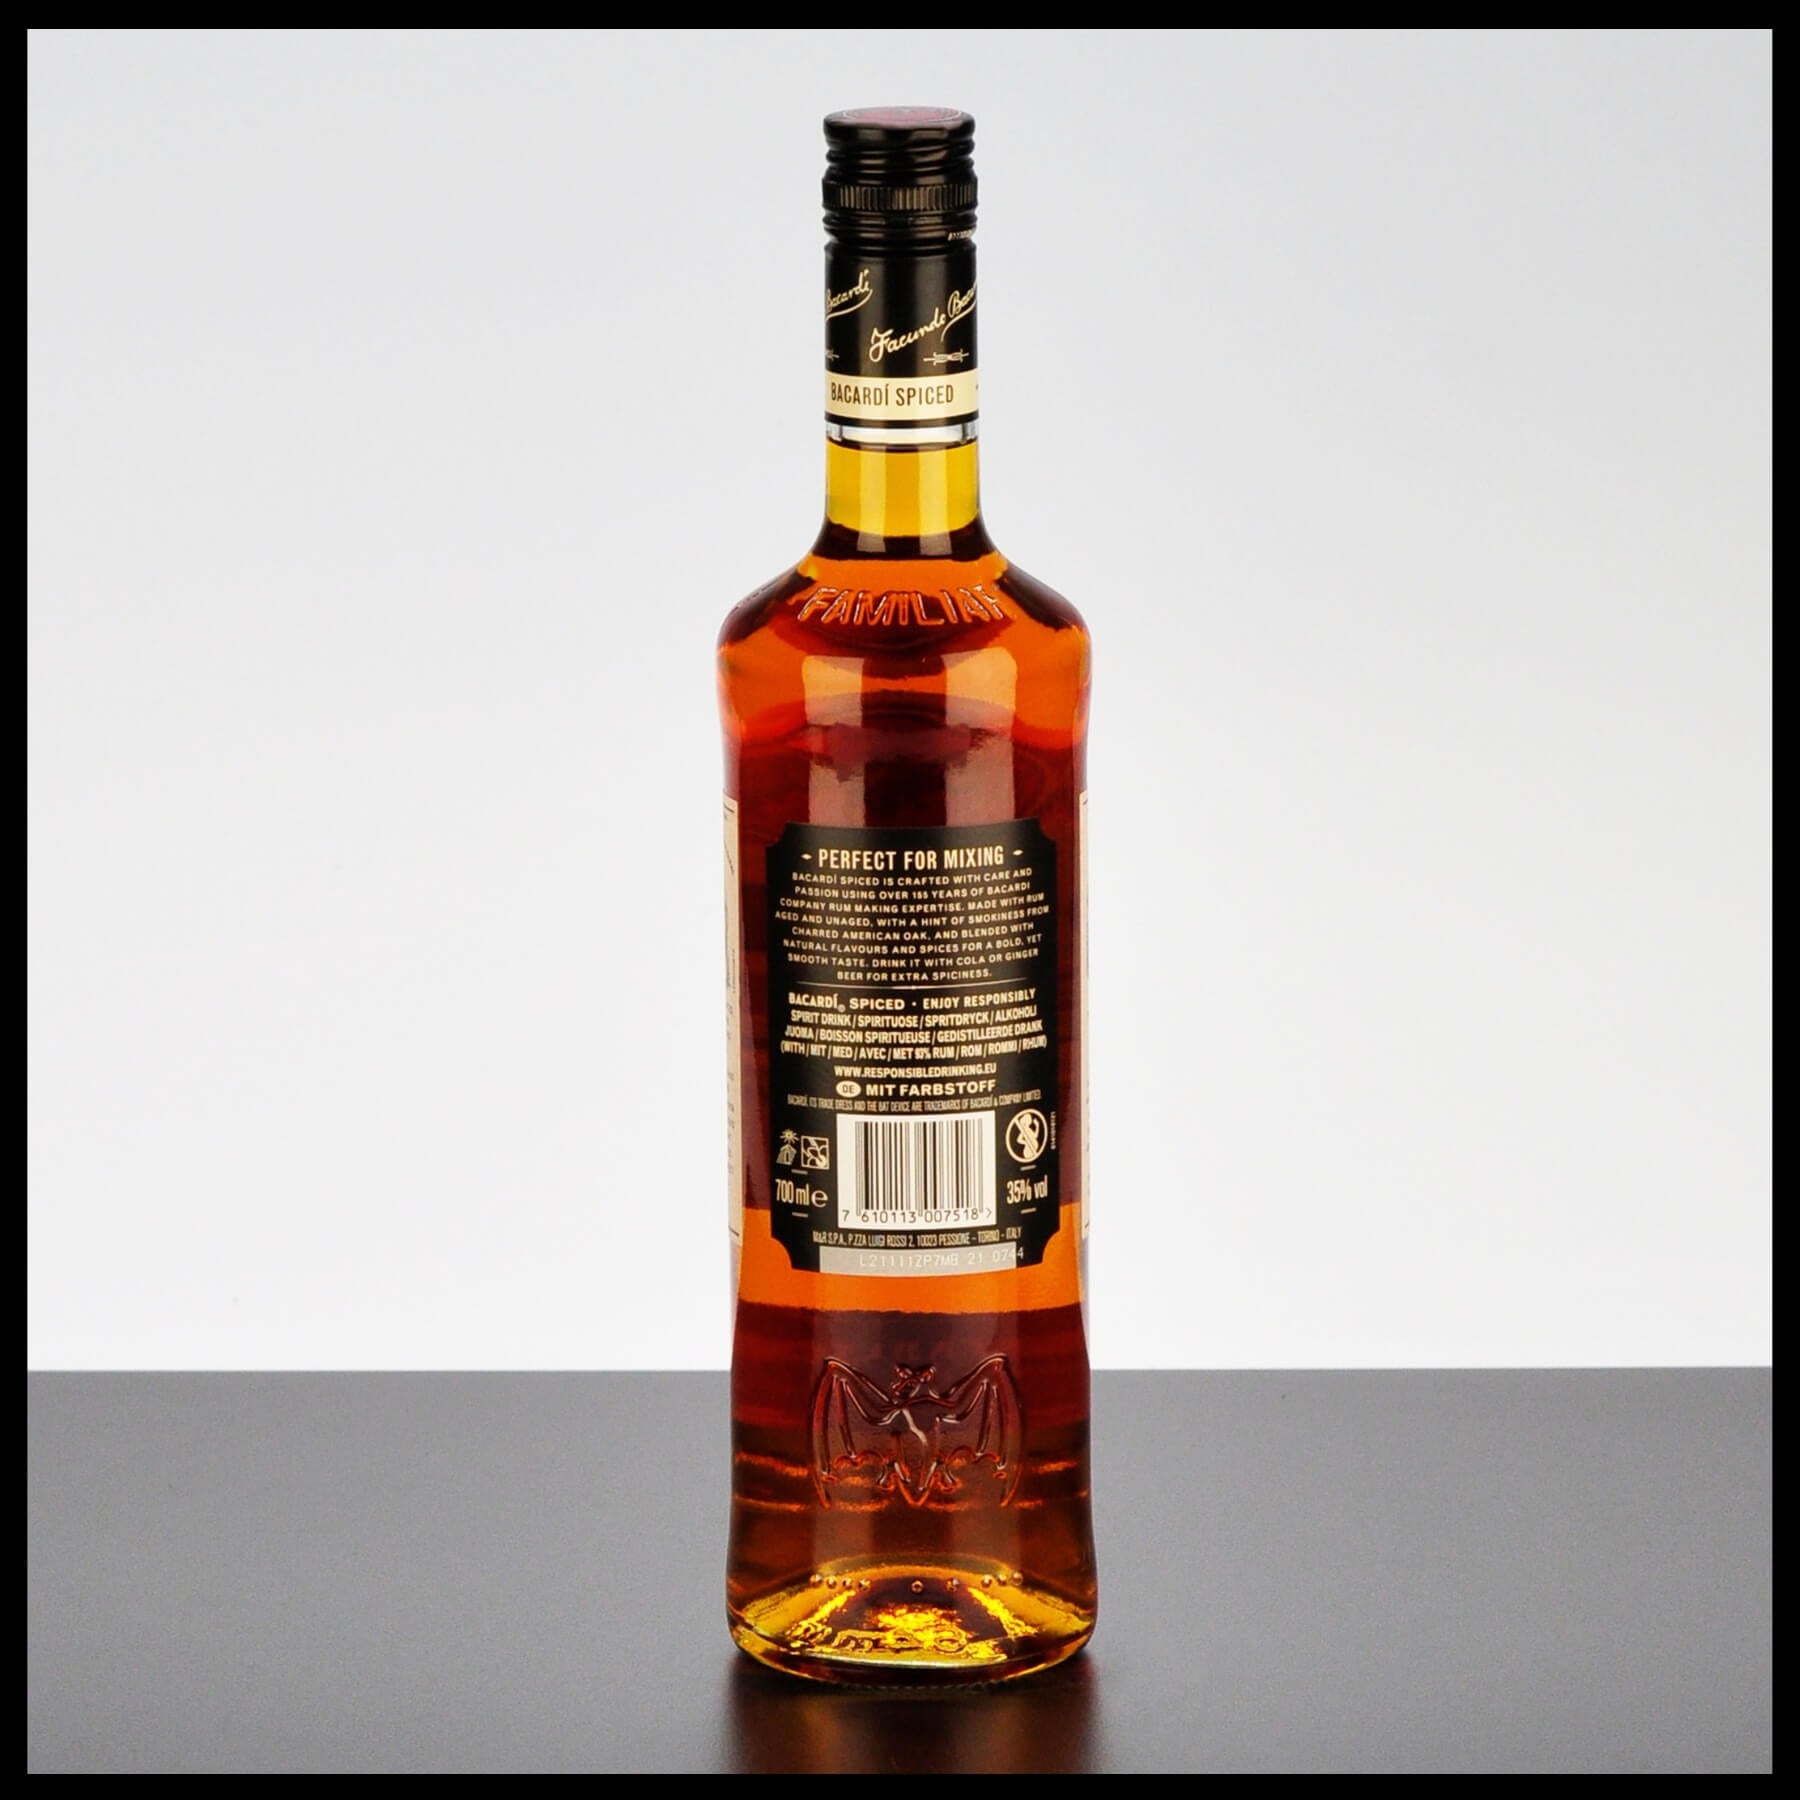 Bacardi Oakheart Spiced Rum 0,7L - 35% Vol. - Trinklusiv